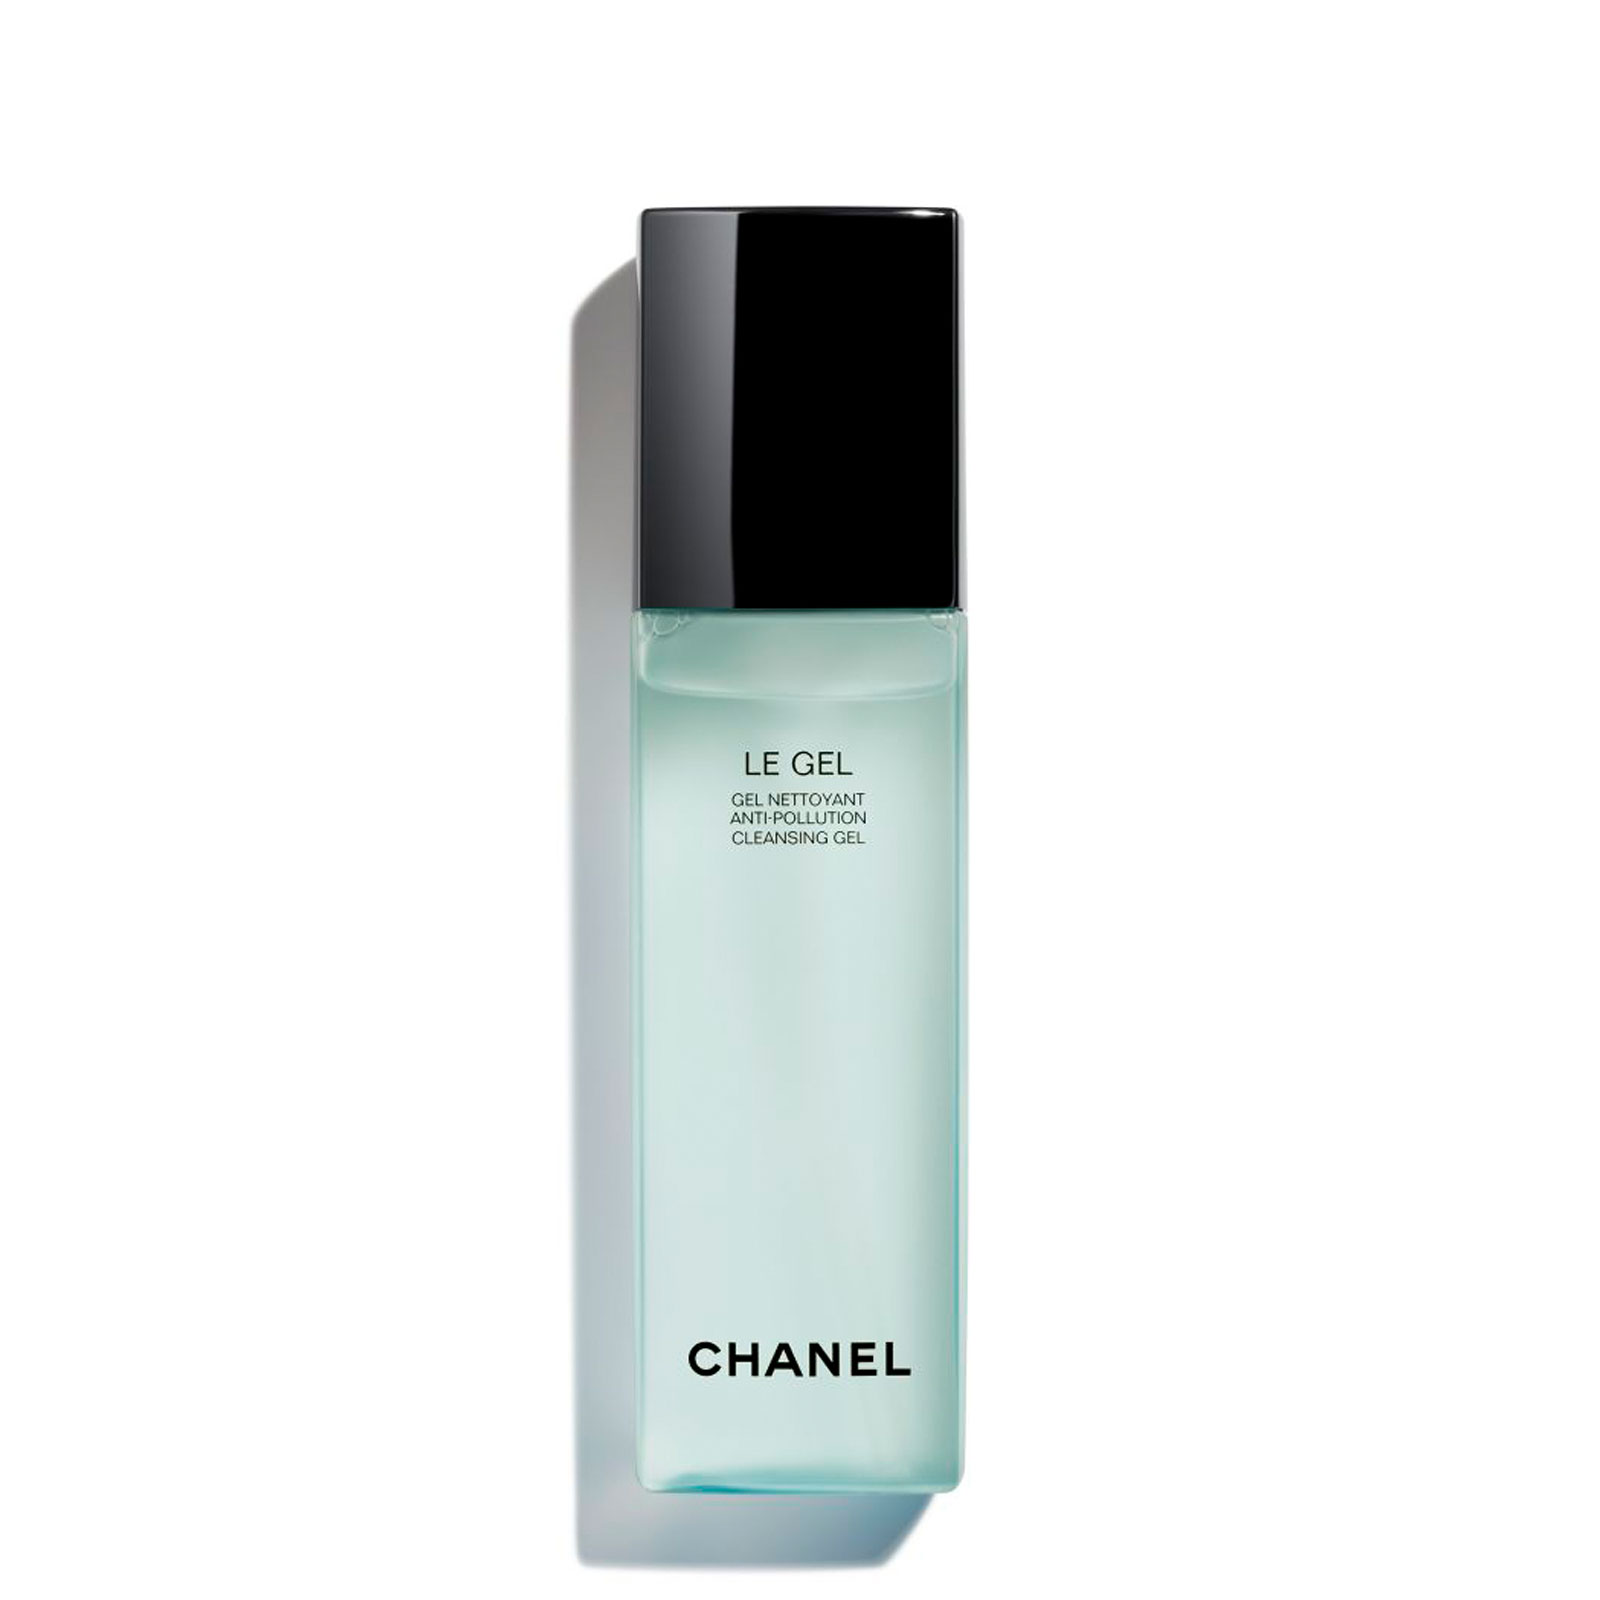 Chanel Le Gel Anti-Pollution Cleansing Gel 150Ml